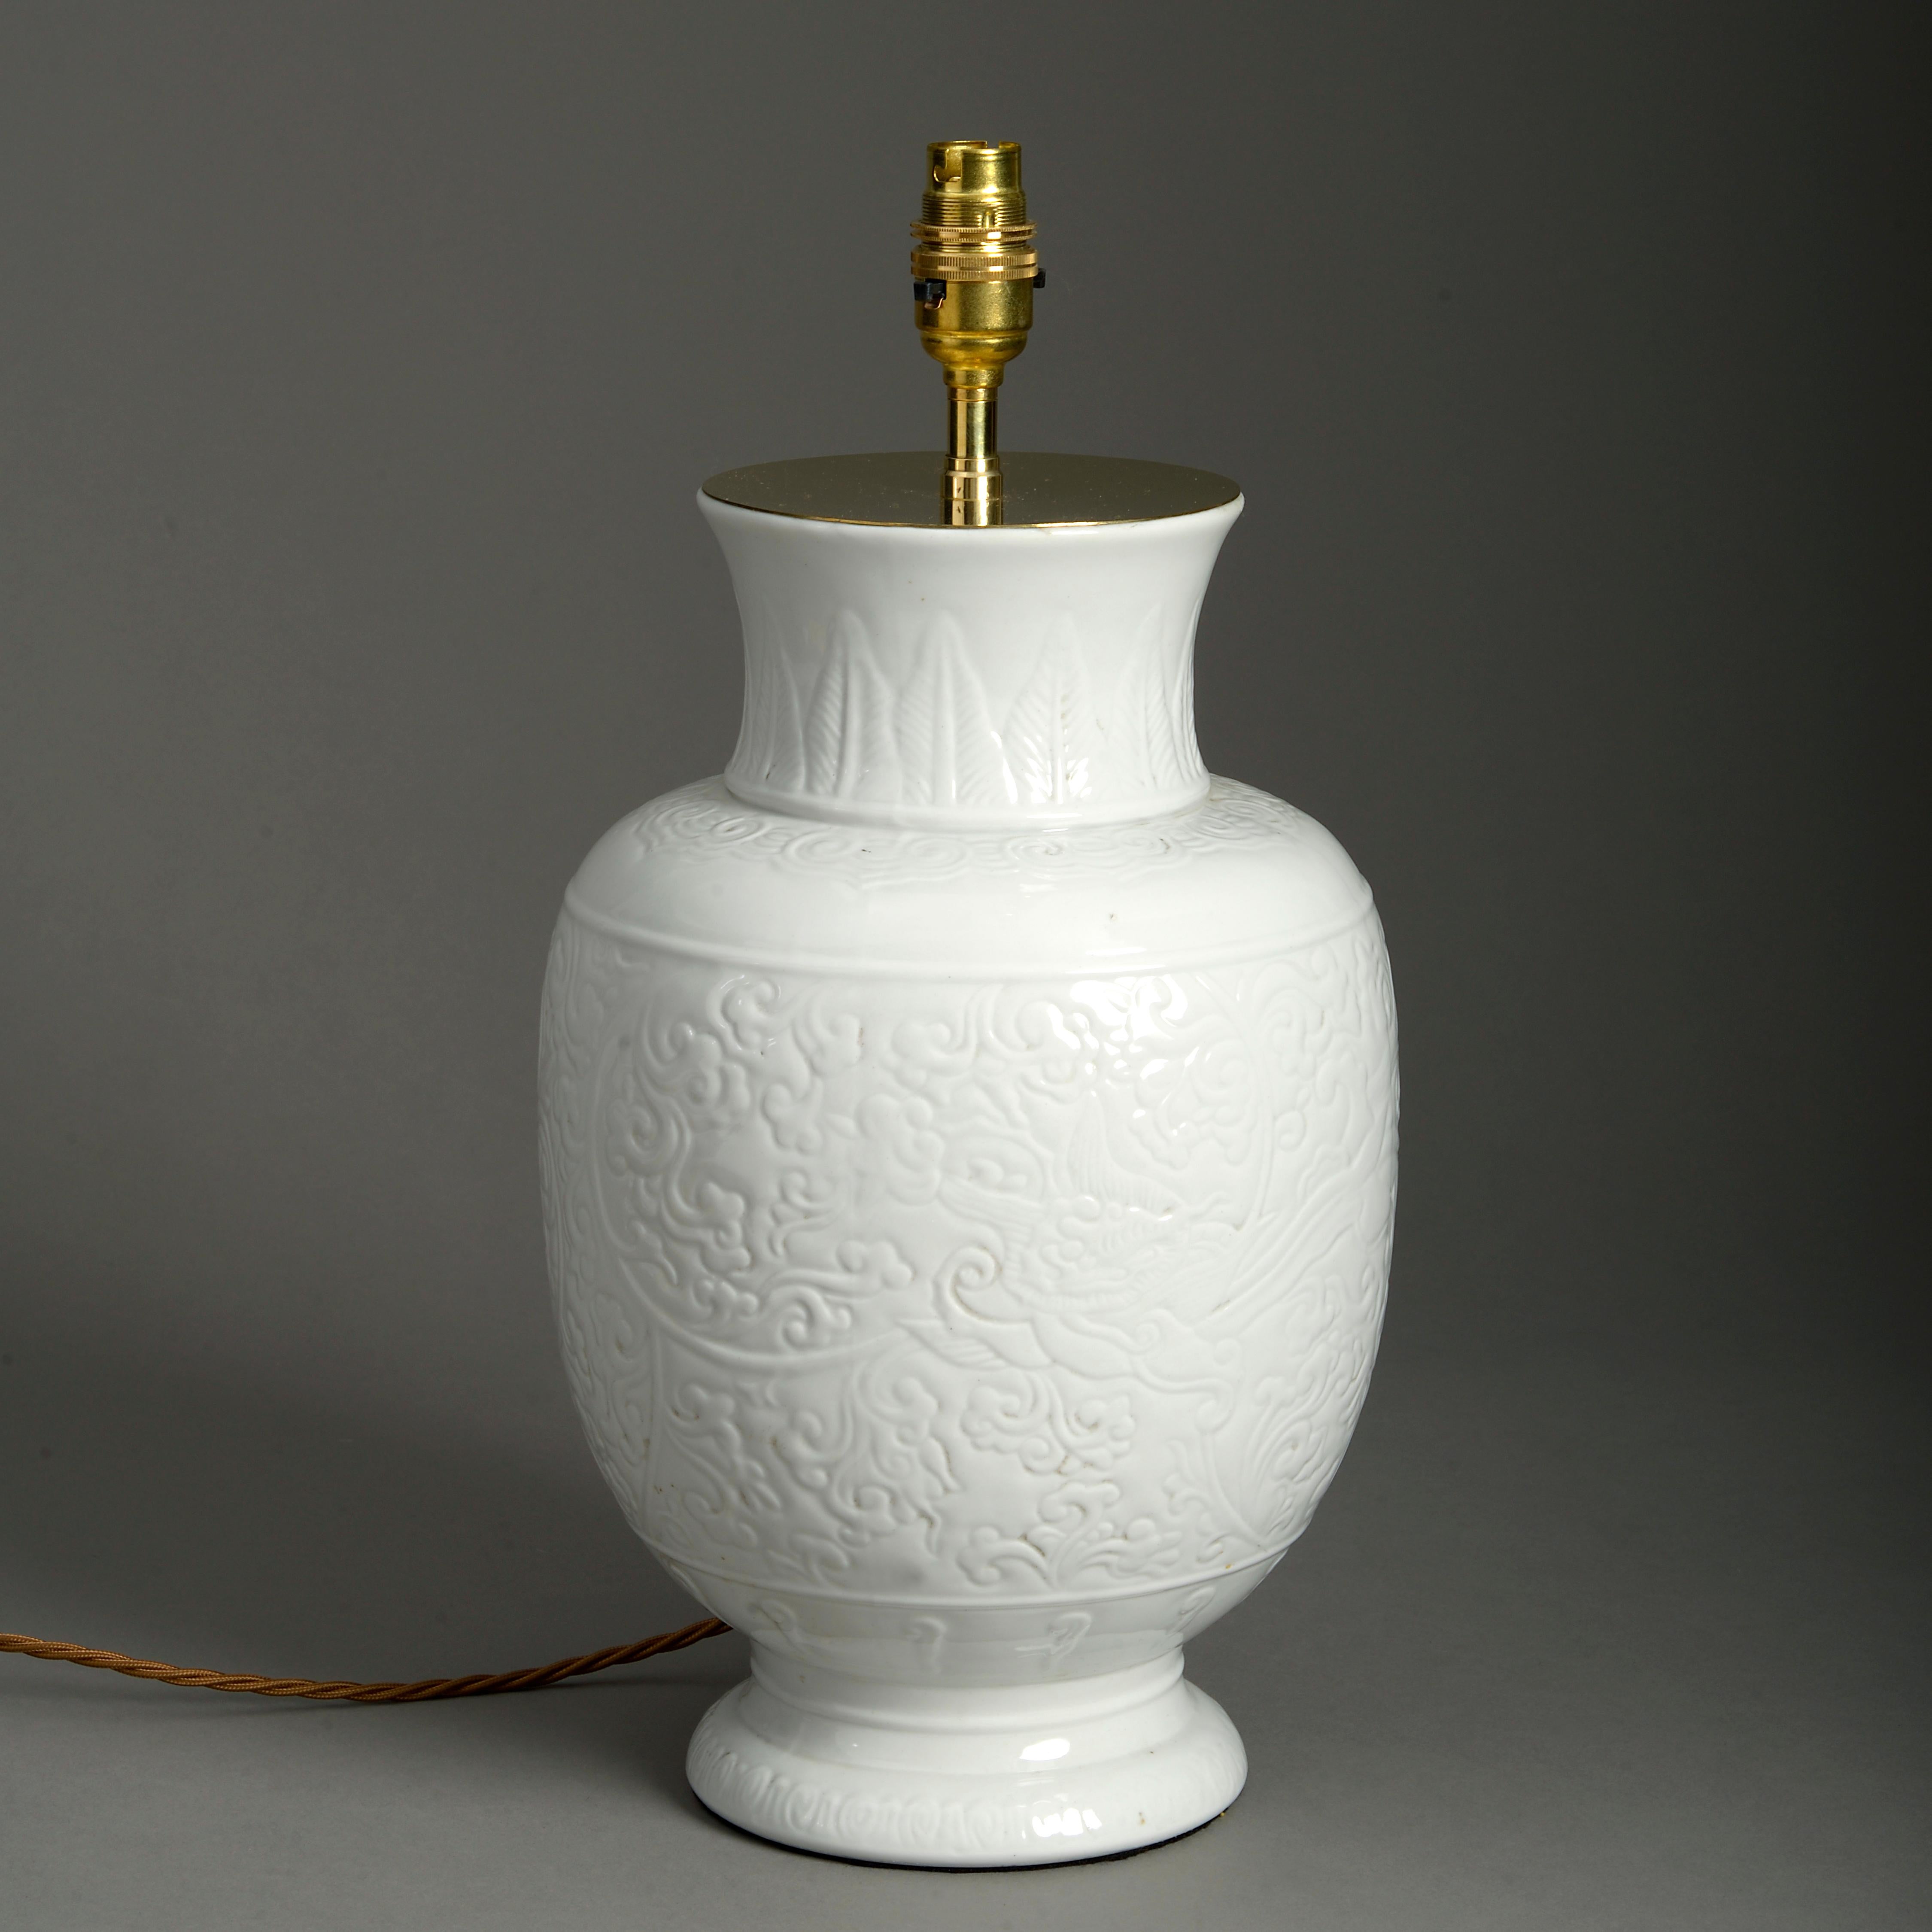 Weiß glasierte Porzellanvase aus dem späten 19. Jahrhundert, Korpus mit eingeschnittenem Dekor.

Jetzt als Tischlampe verkabelt.

Die Abmessungen beziehen sich nur auf die Vase und beinhalten keine elektrischen Komponenten.

Diese Lampe wurde